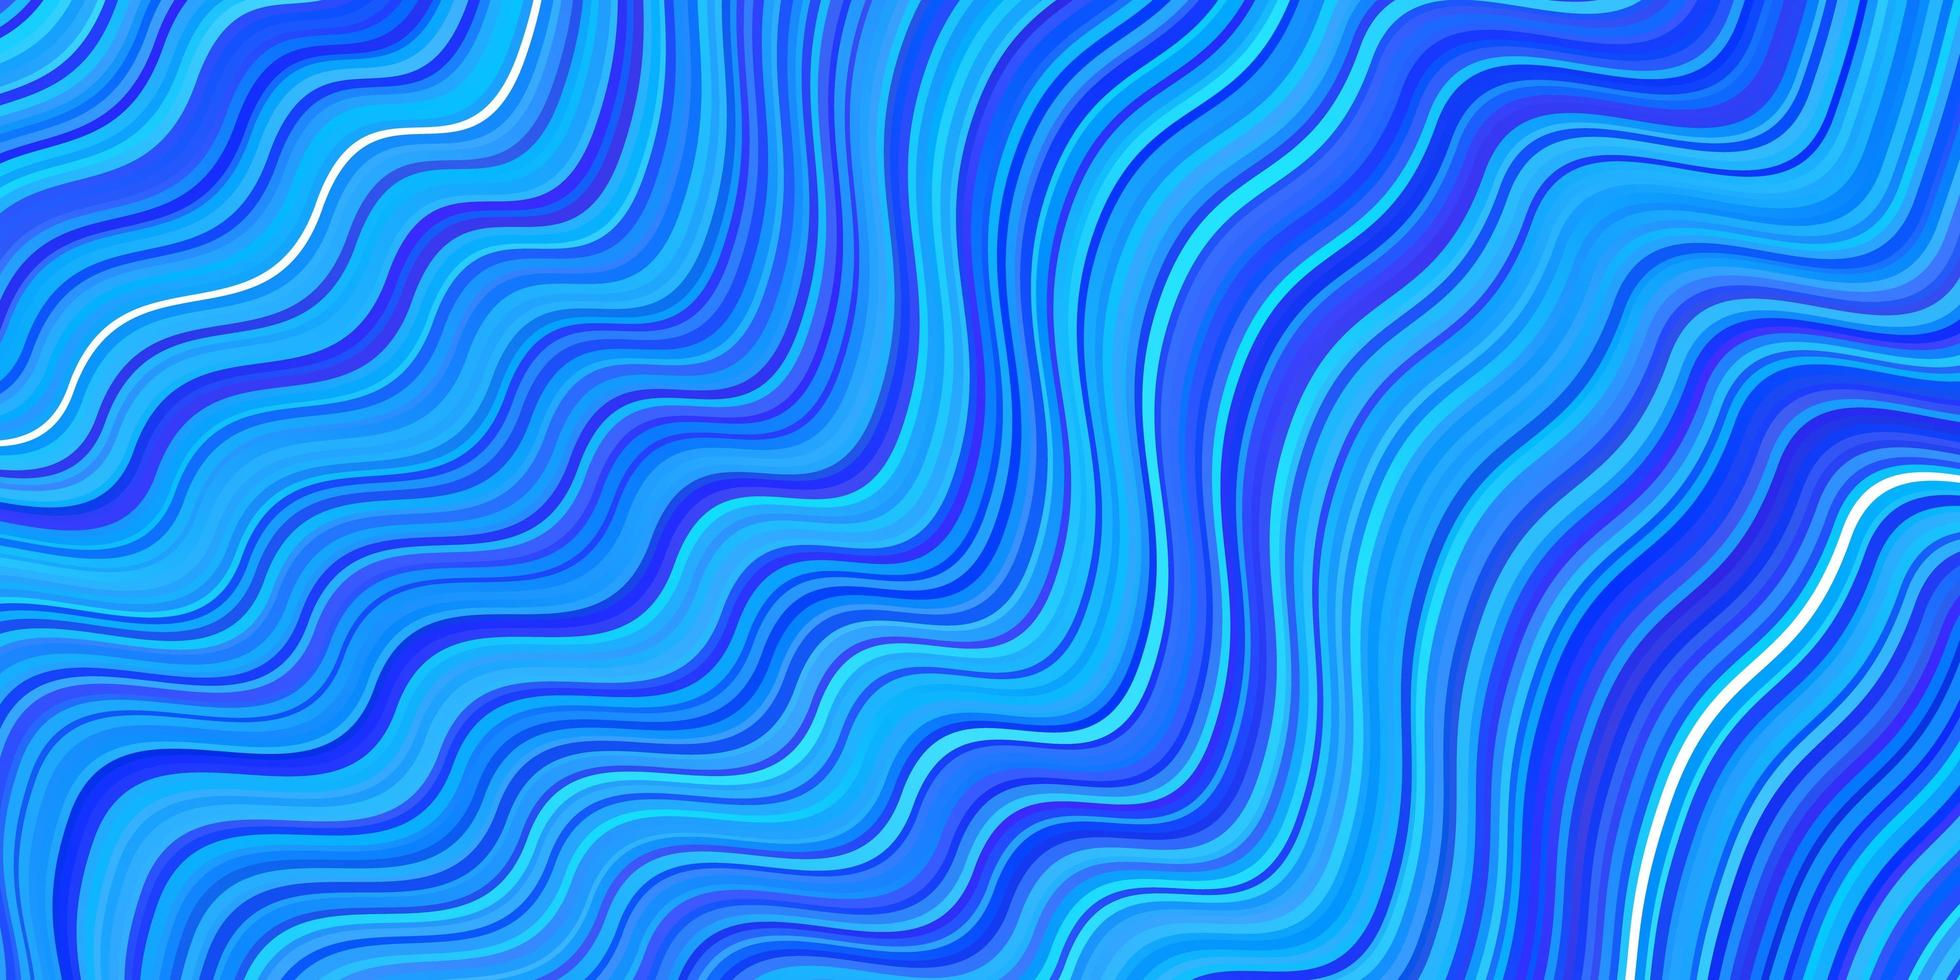 texture vettoriale blu chiaro con linee curve